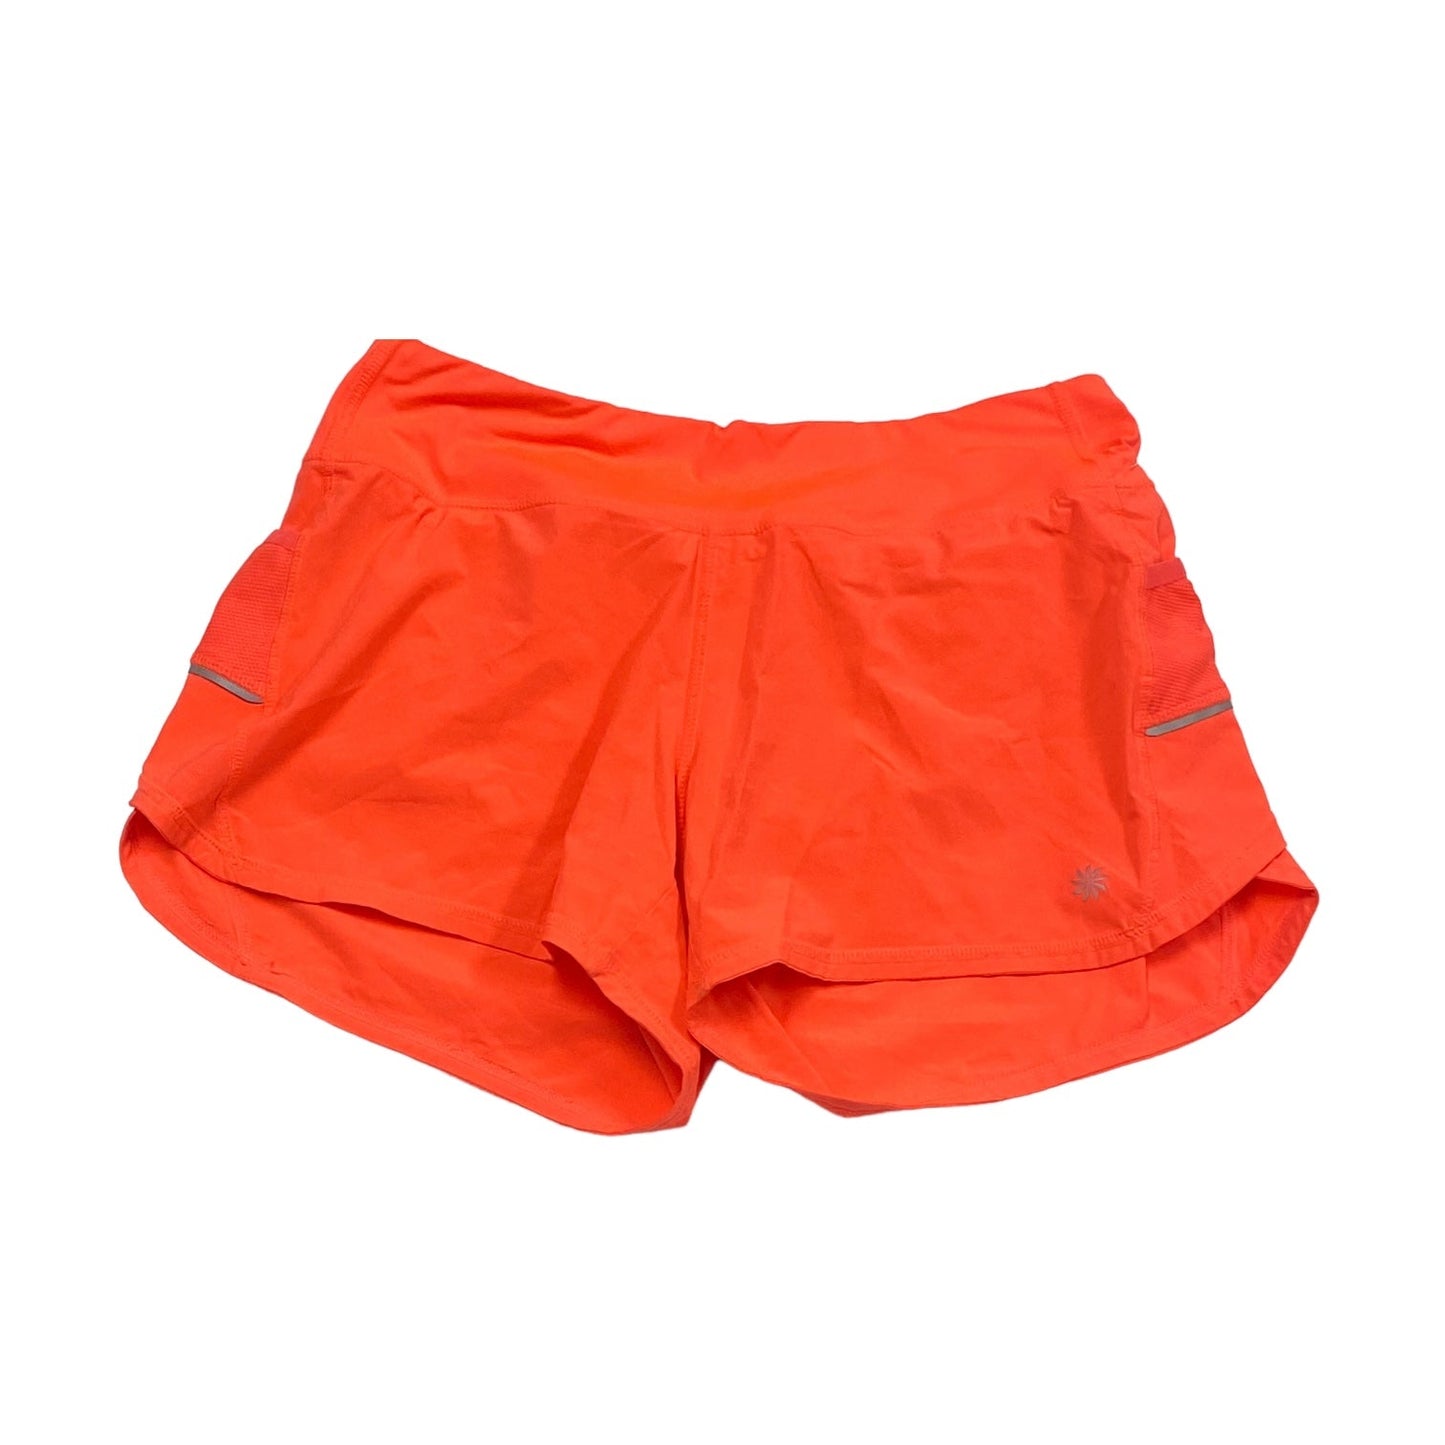 Orange Athletic Shorts Athleta, Size M